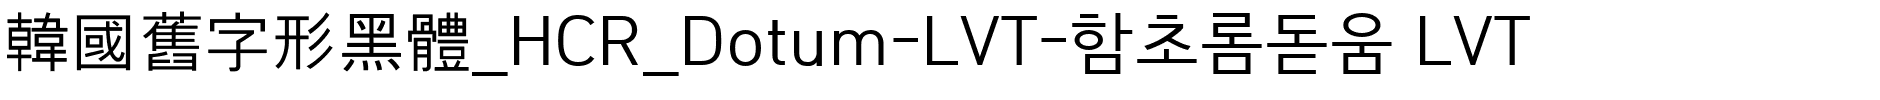 韓國舊字形黑體_HCR_Dotum-LVT-함초롬돋움 LVT.ttf